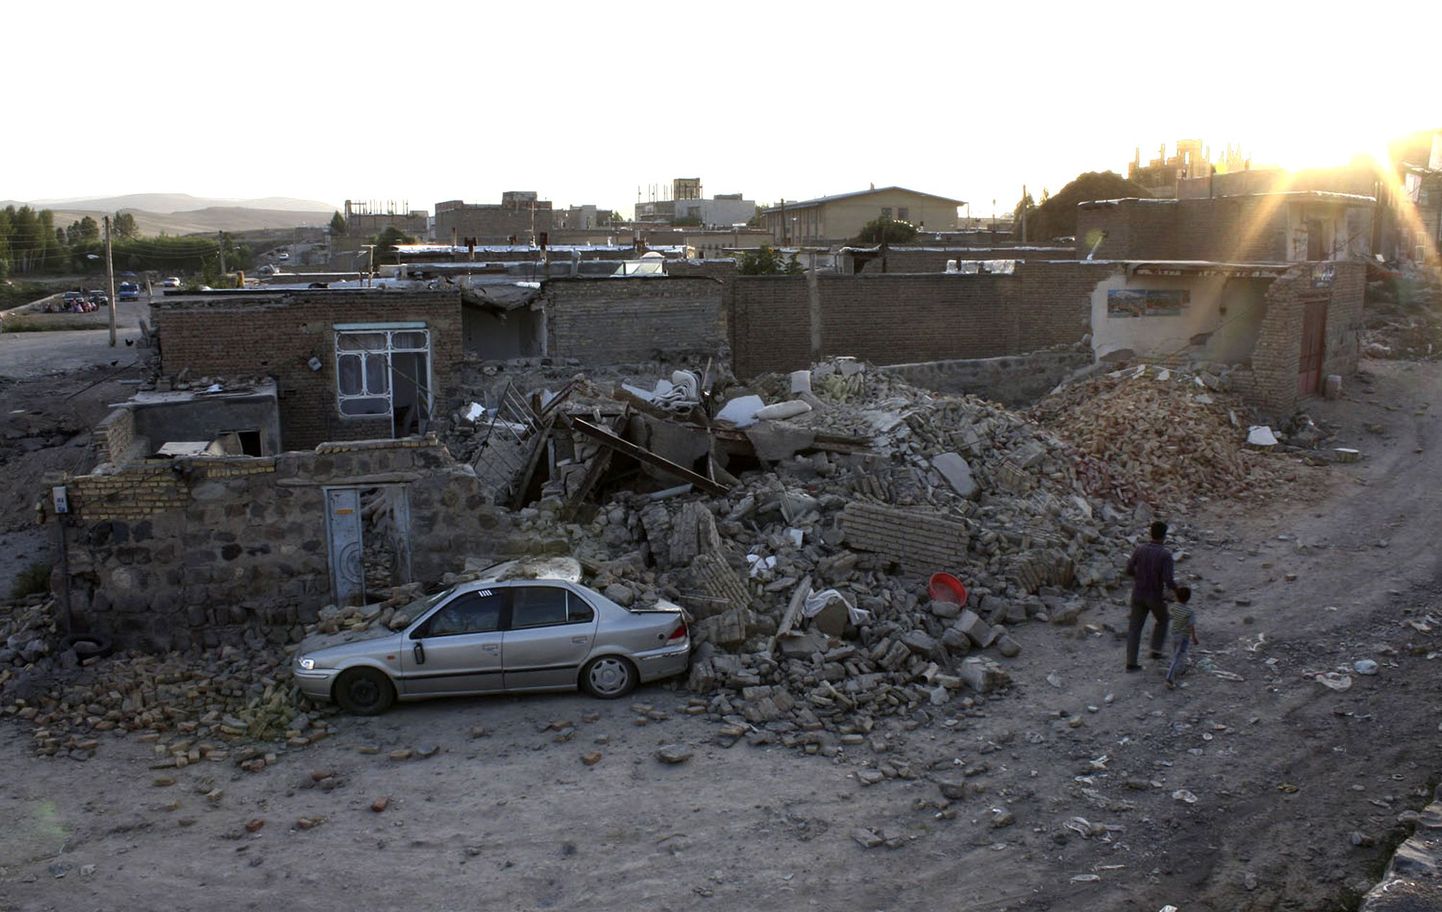 Iraani maavärinates sai surma vähemalt 153 inimest.